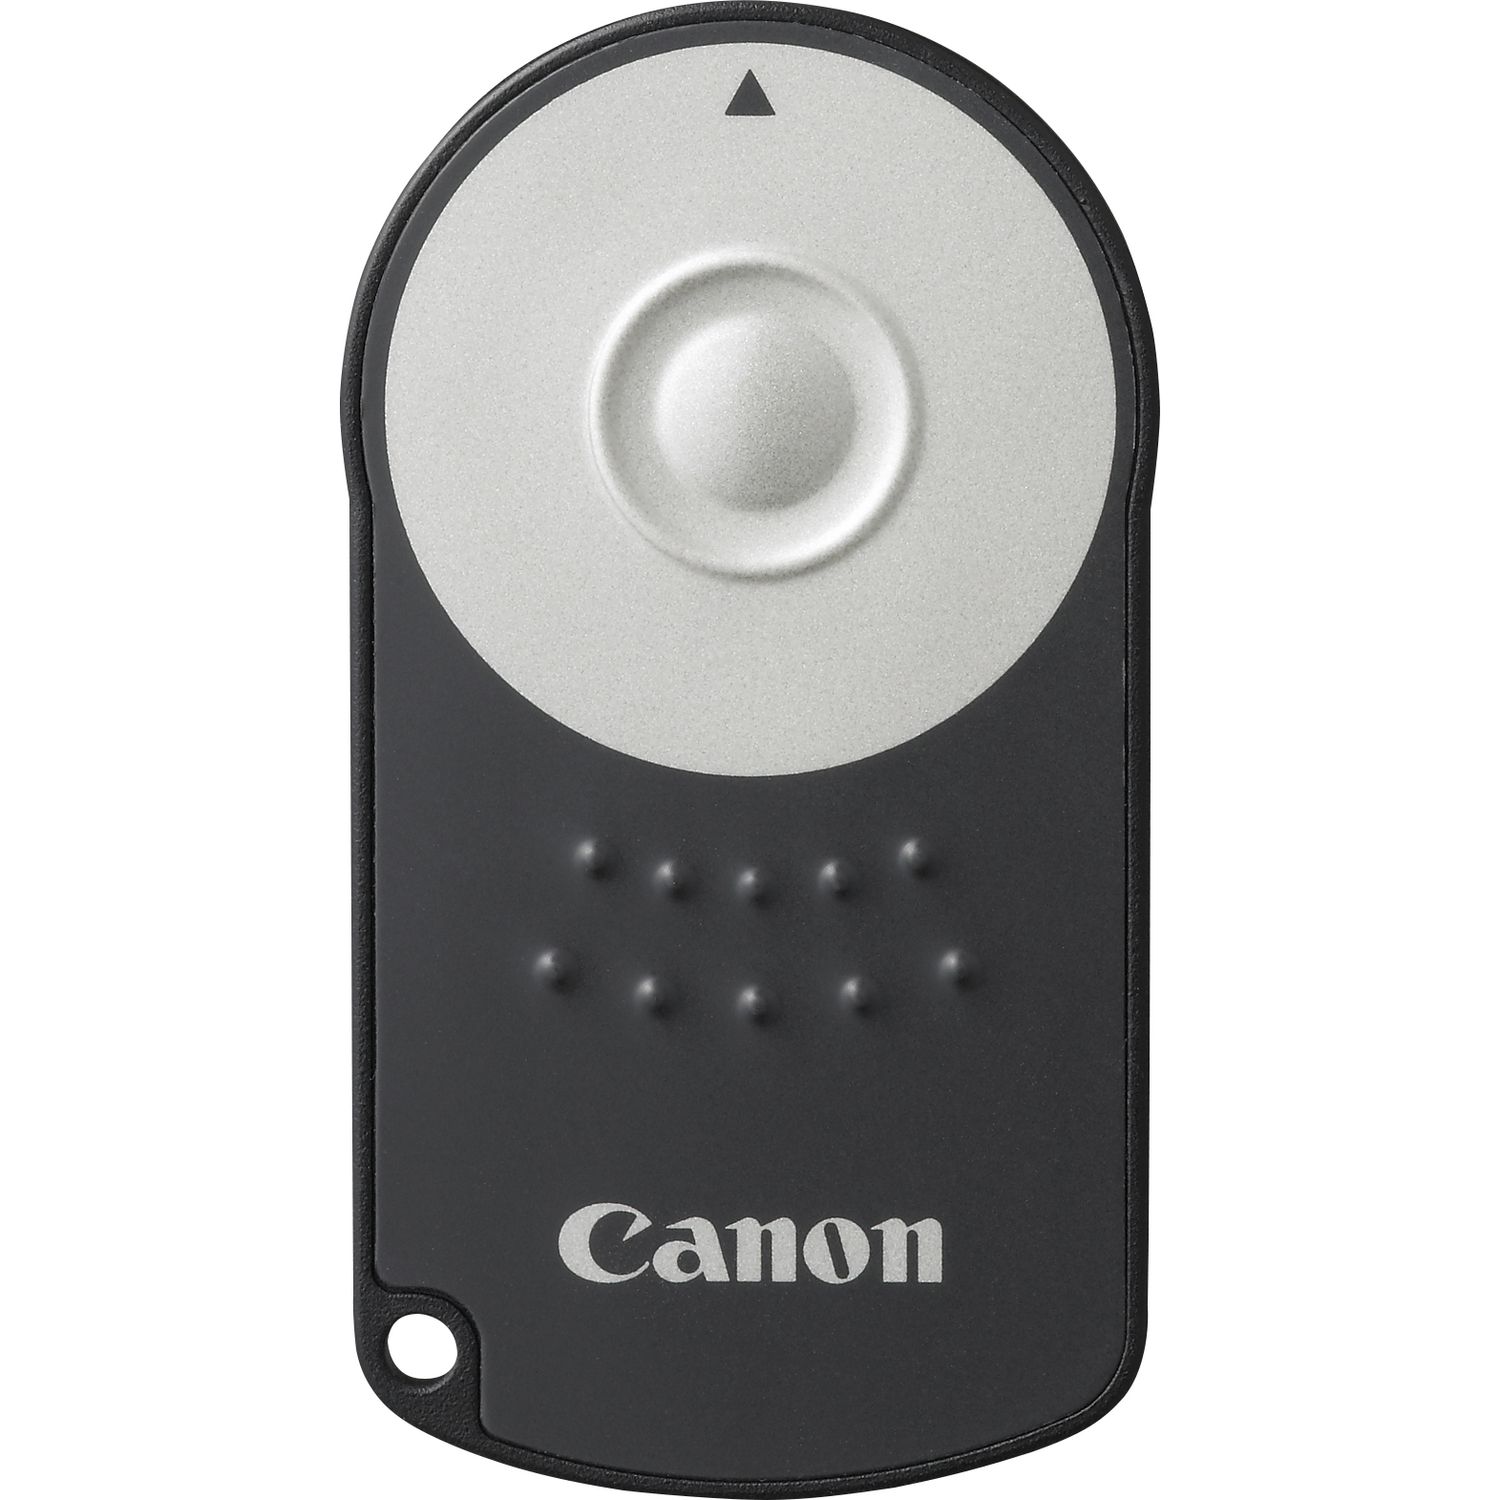 SODIAL 48 284 R Canon Canon RC-6 produit compatible declencheur a distance sans fil version du code de linterrupteur de la telecommande telecommande sans fil a distance 